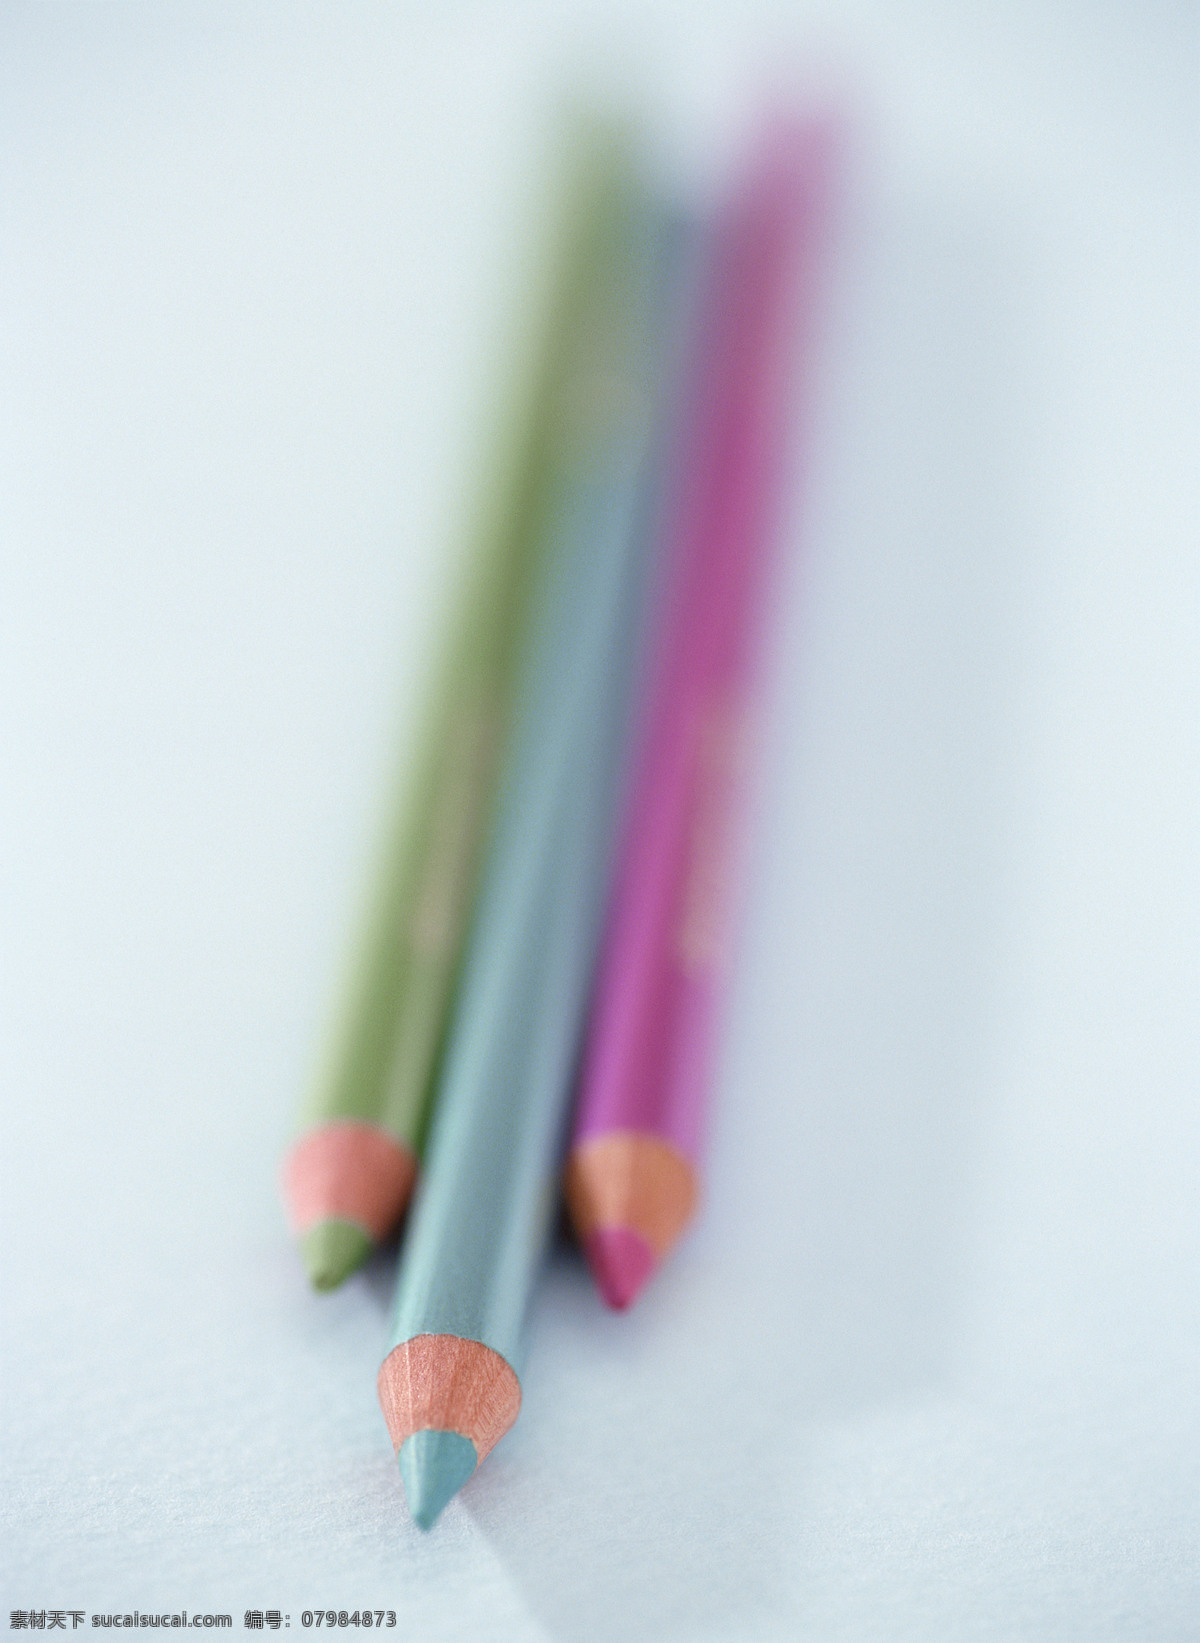 静物 物品 创意 组合 造型 彩色 铅笔 彩色铅笔 笔尖 削尖 风景 生活 旅游餐饮